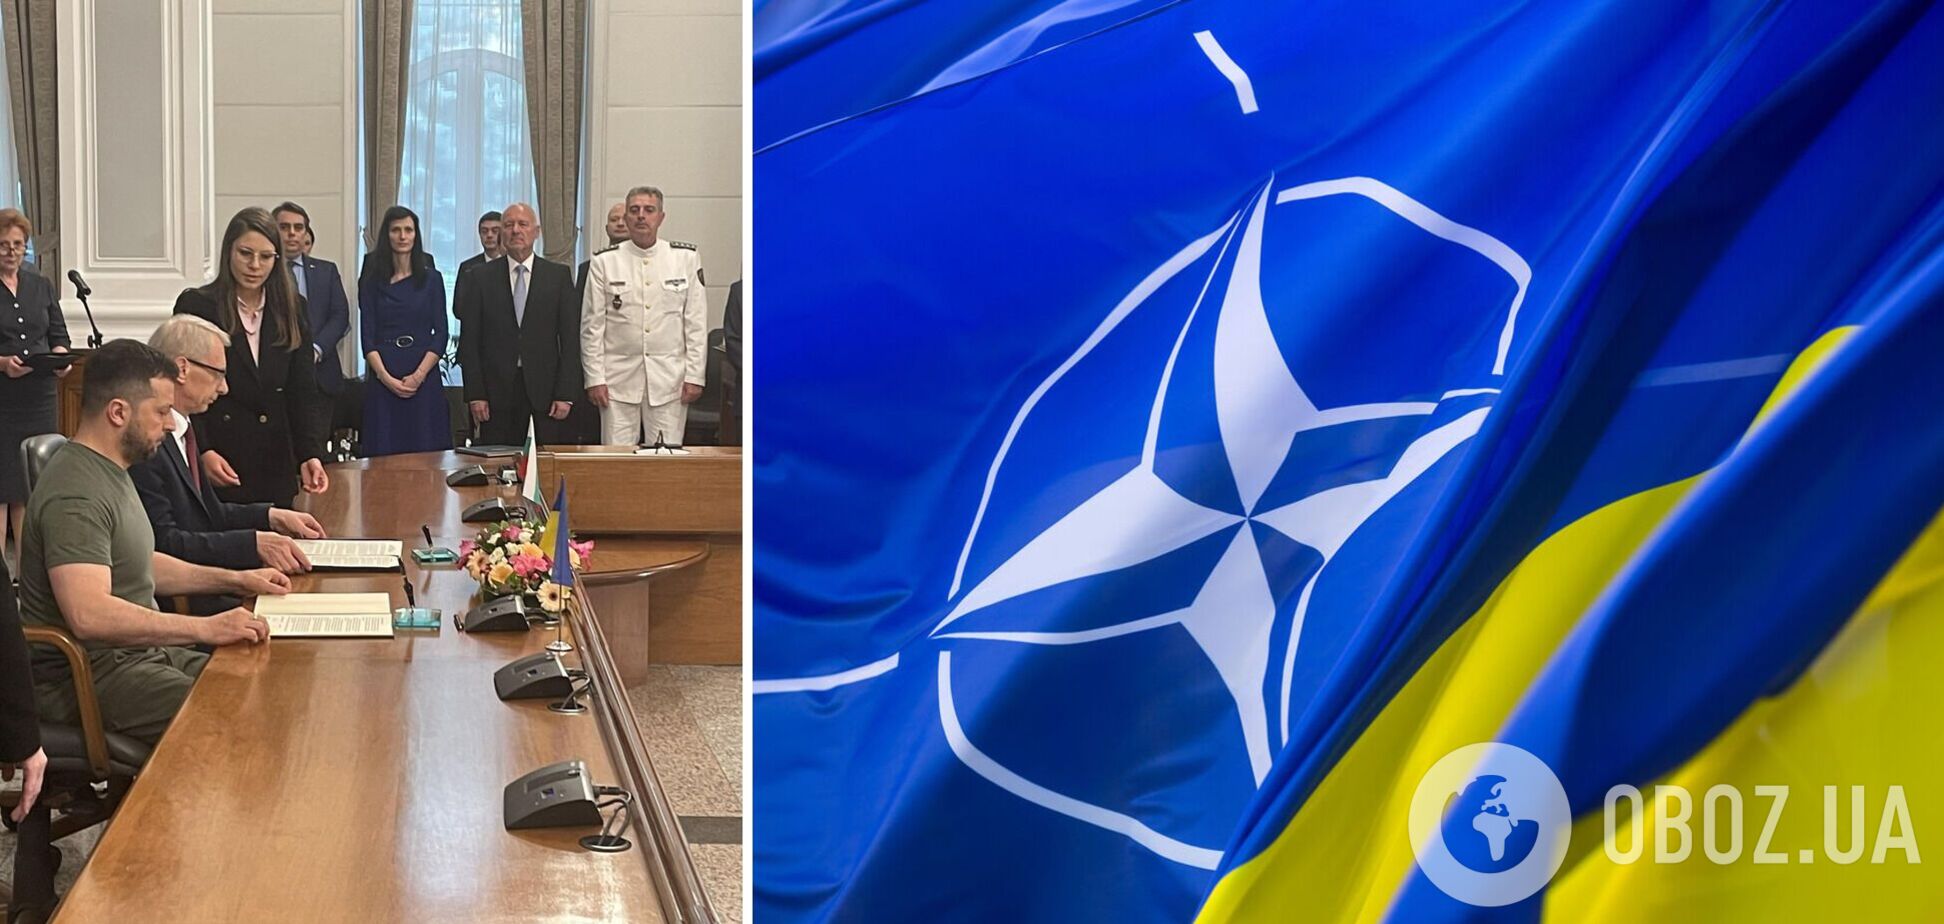 Украина и Болгария заключили совместную декларацию о поддержке членства в НАТО. Фото